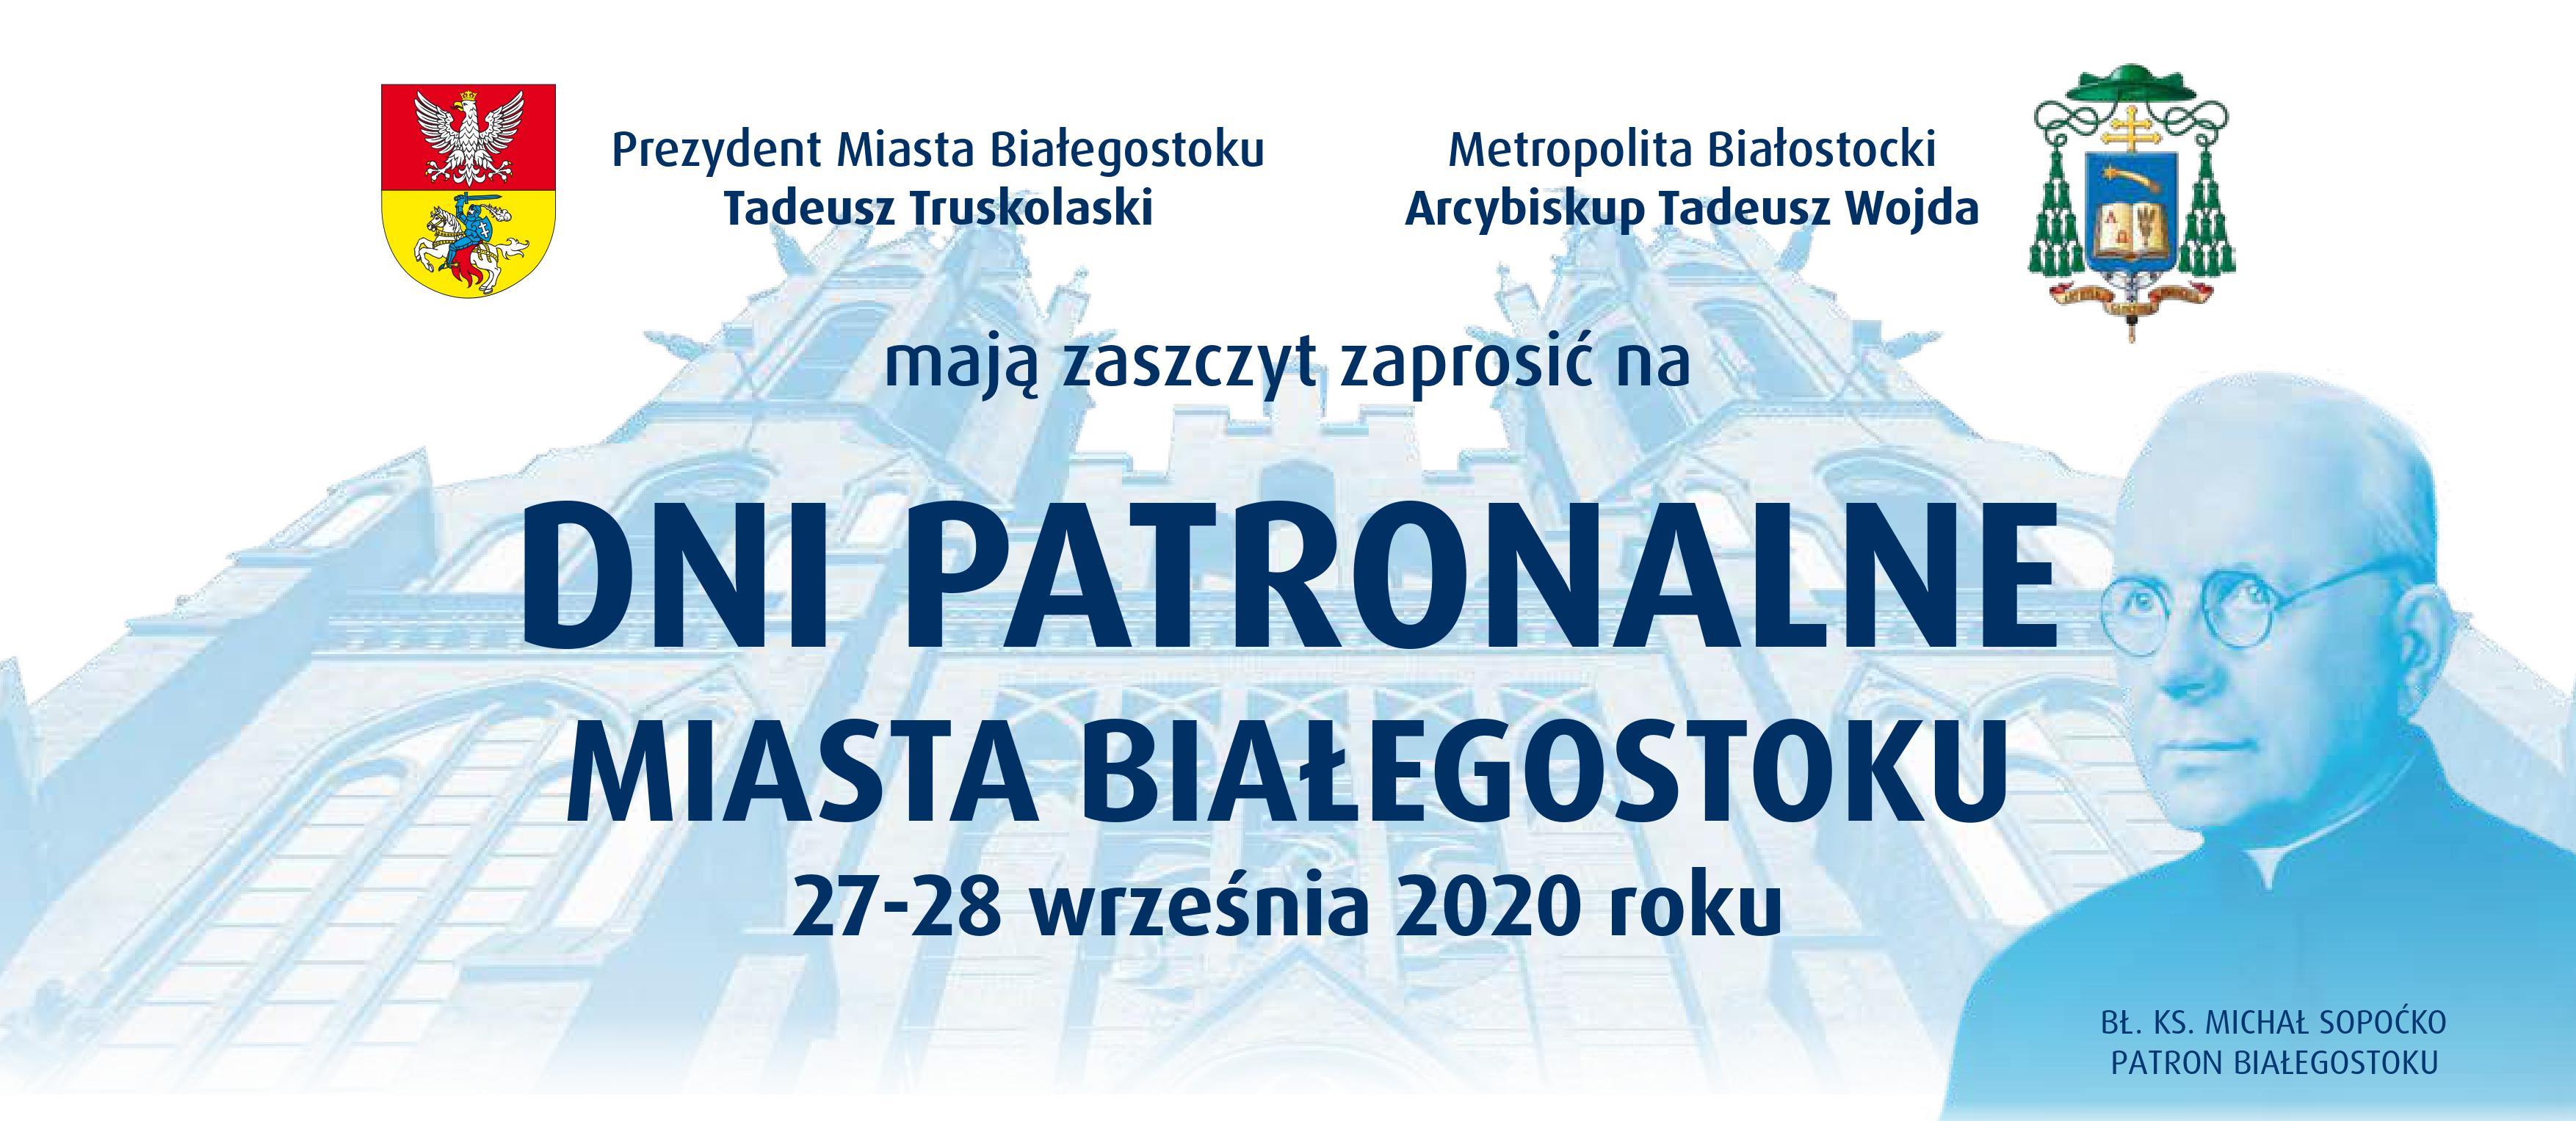 Plakat informujący o Dniach Patronalnych Miasta Białegostoku wraz z programem uroczystości